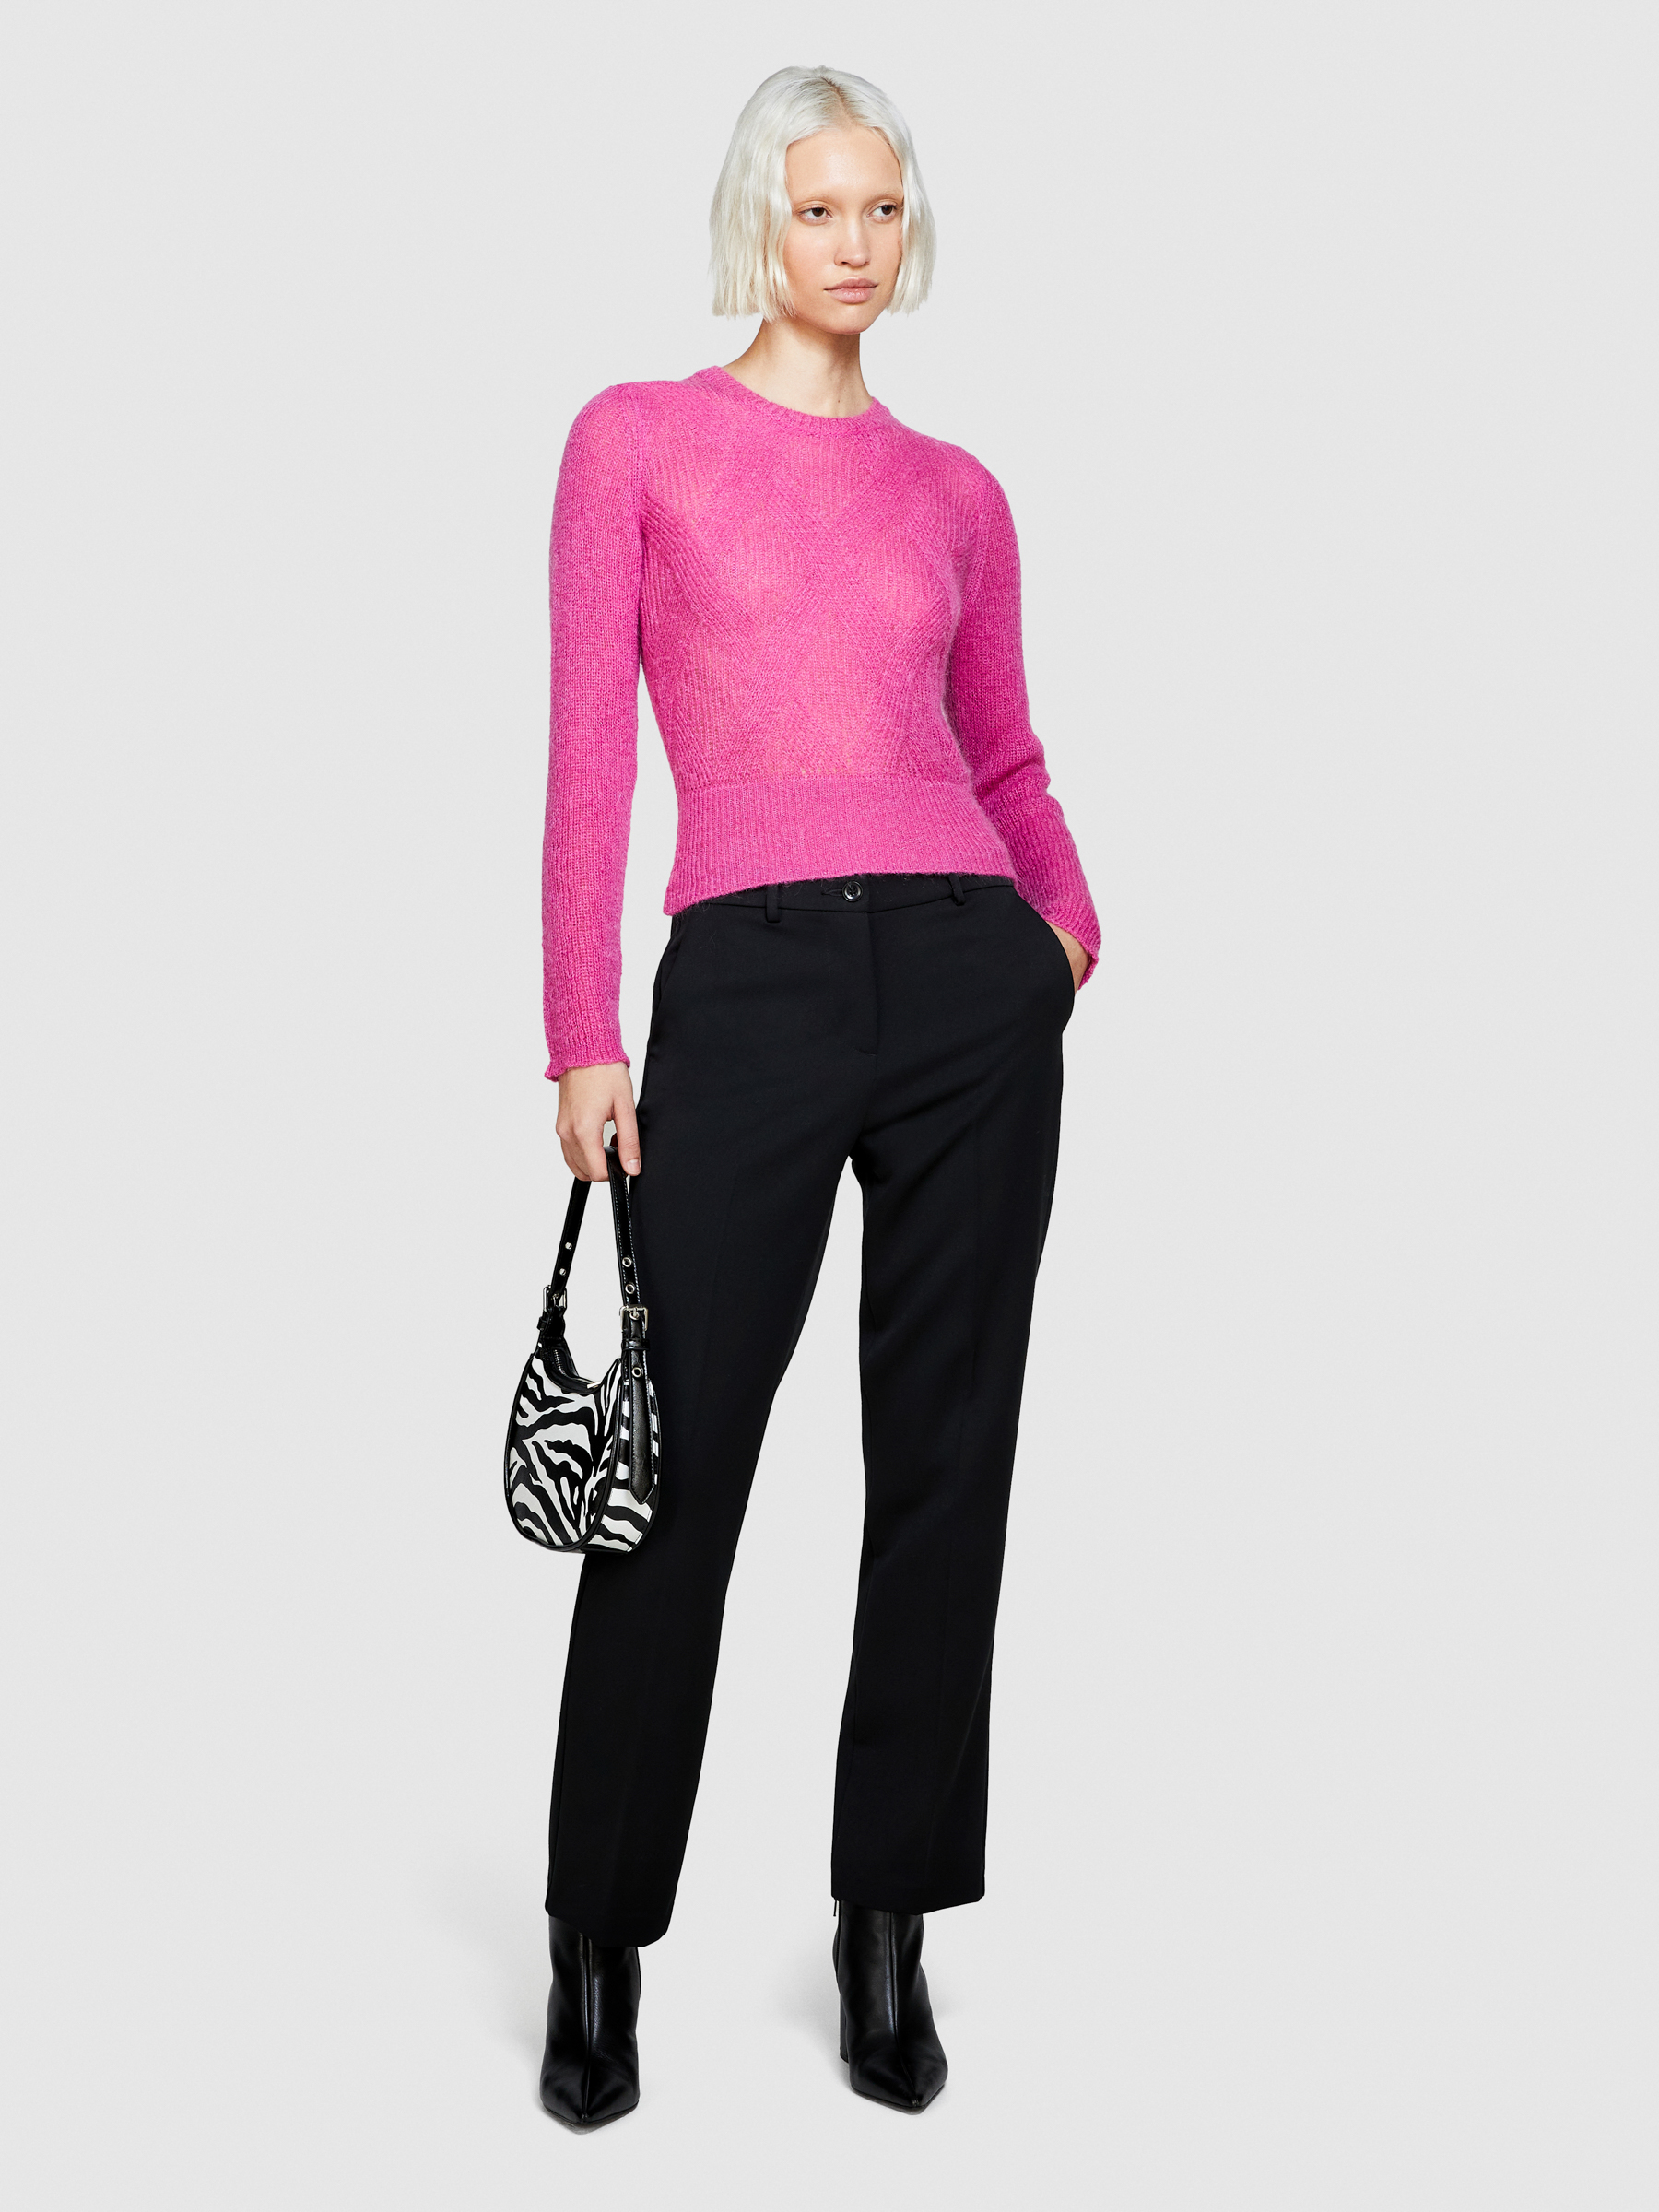 Sisley - Knit Sweater, Woman, Pink, Size: S